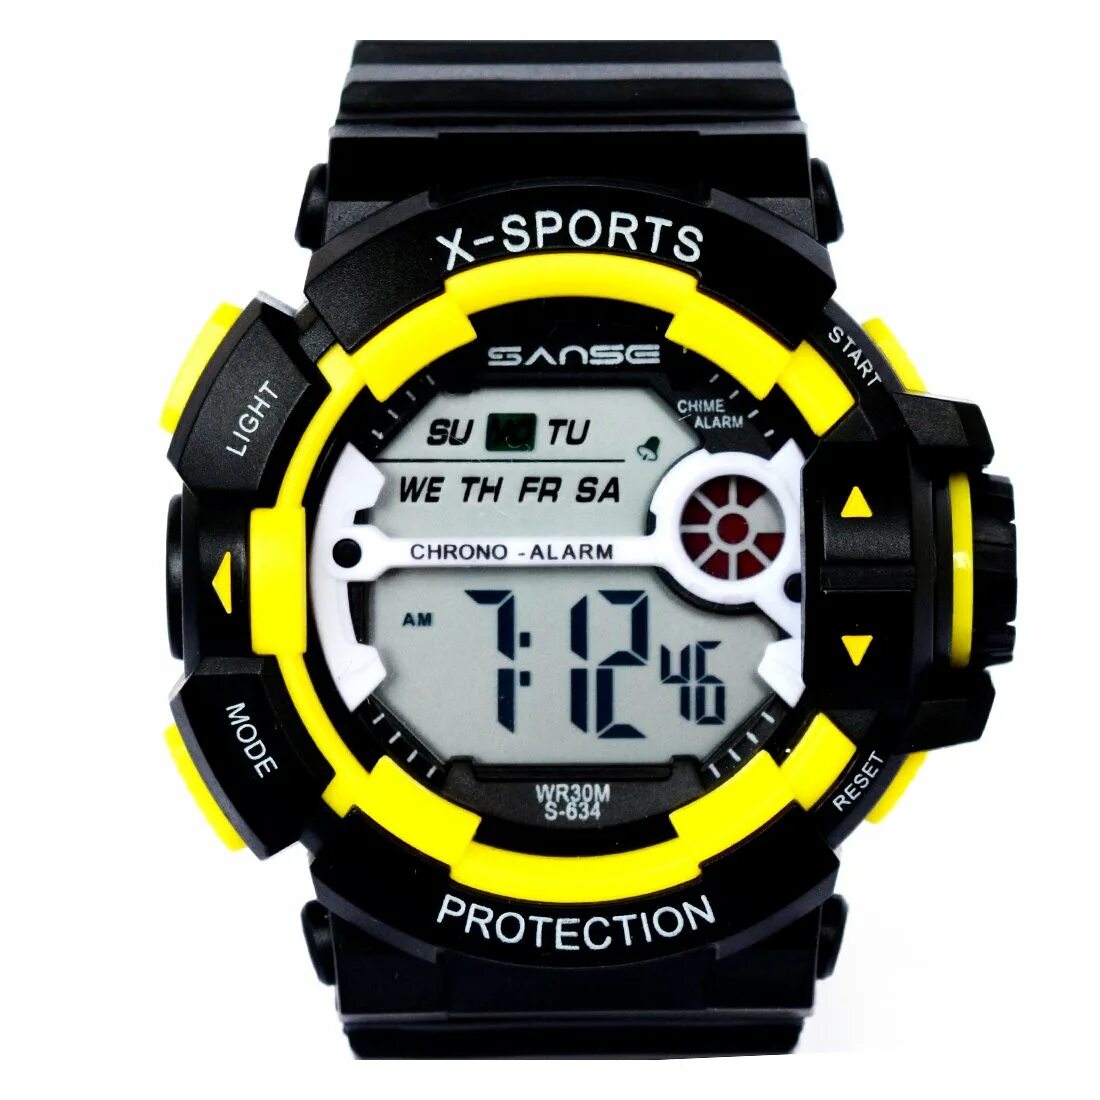 G Sport wr30m часы. Часы wr30m Cheng Qiang. Часы s-Sport WR 30 M. Watch sport отзывы